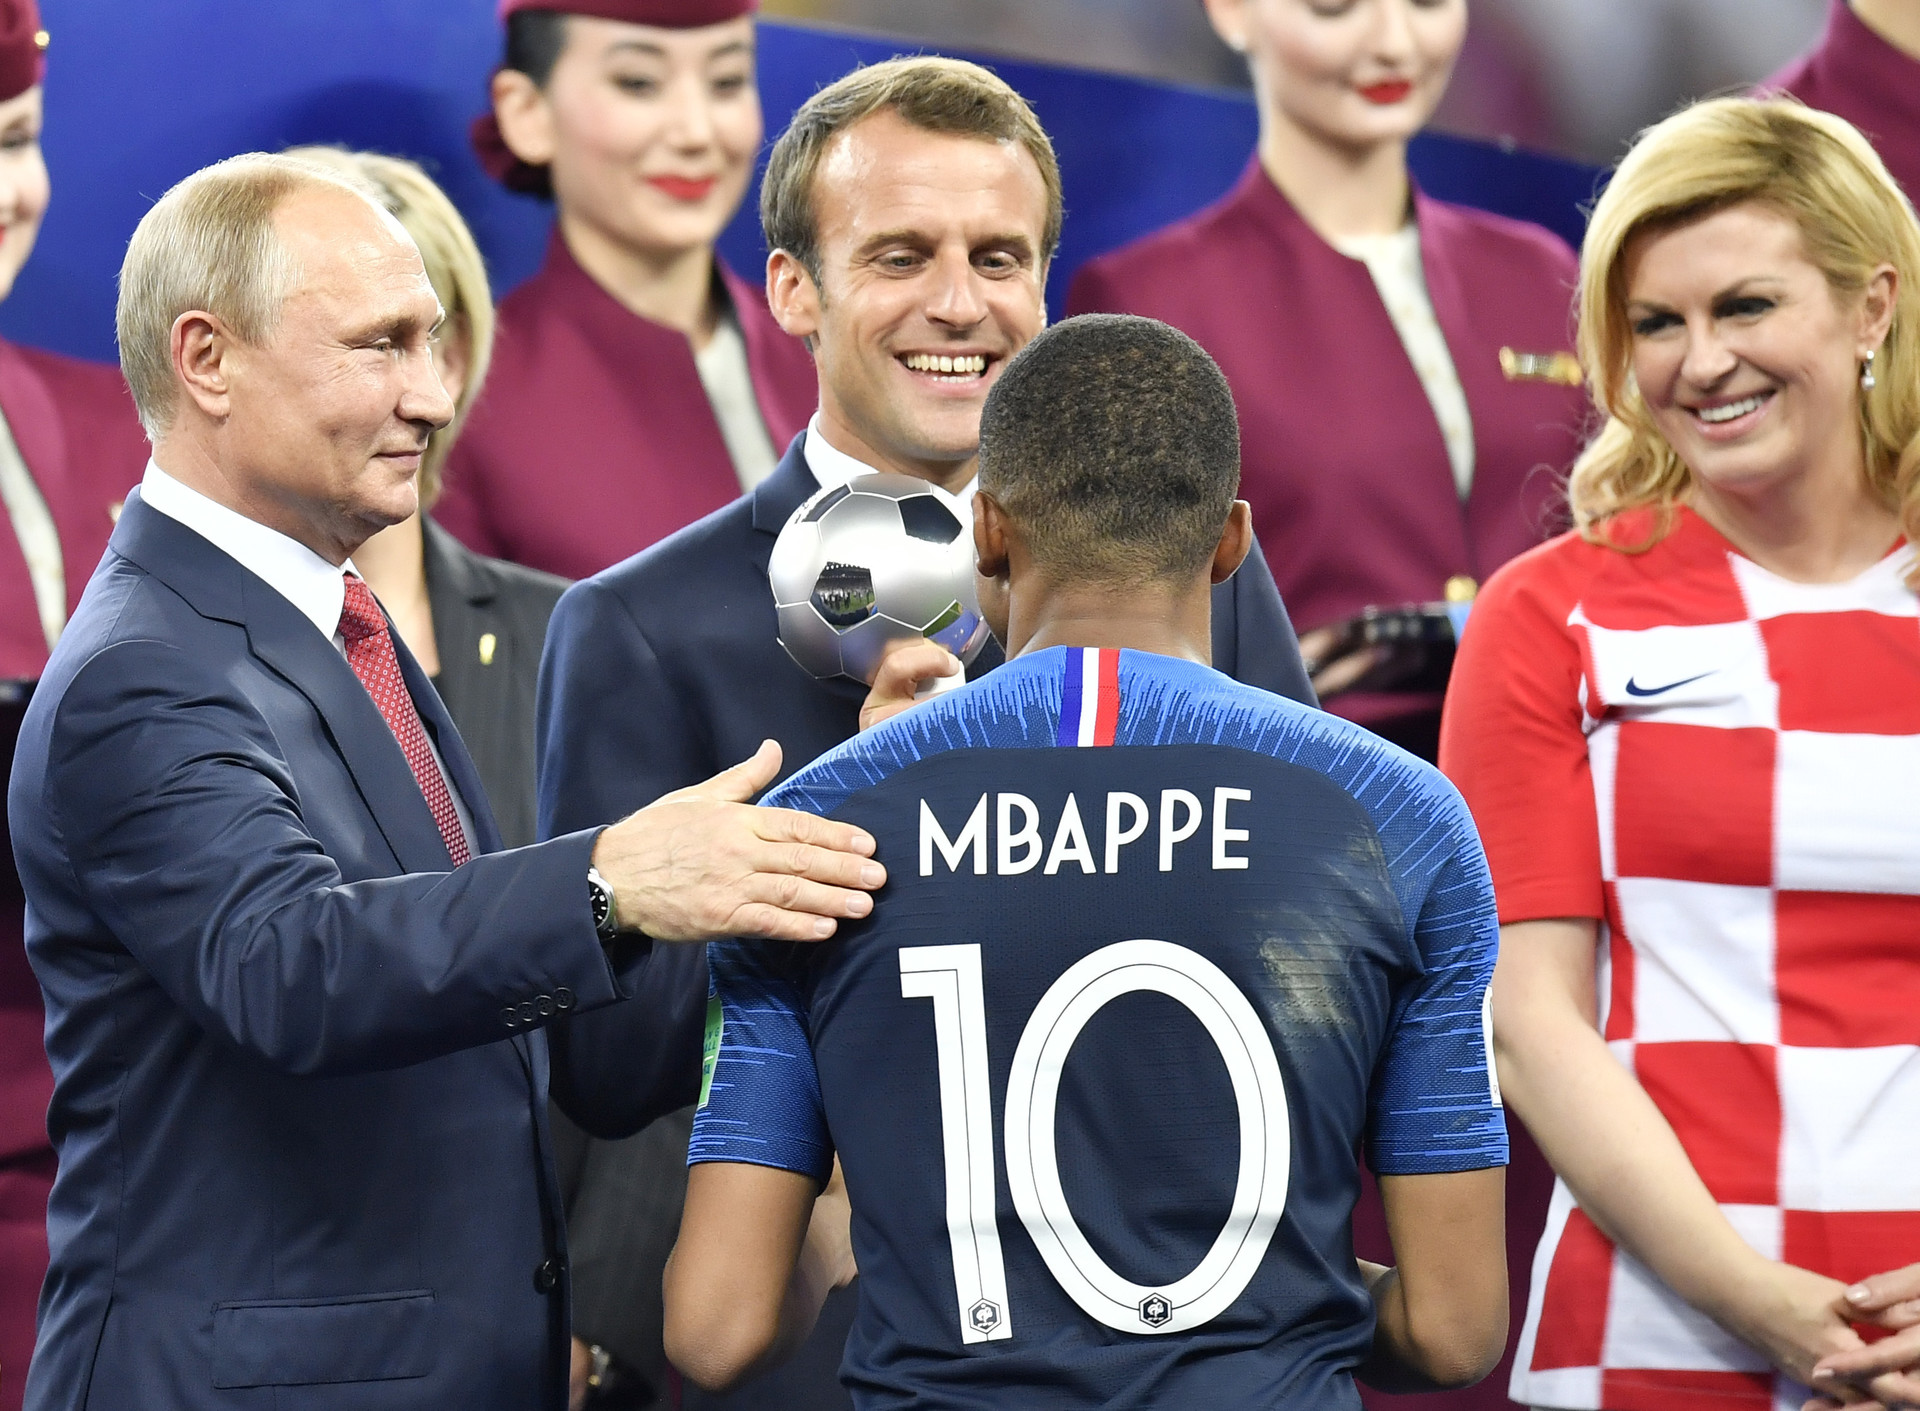 Dari kiri ke kanan: Presiden Rusia Vladimir Putin, Presiden Prancis Emmanuel Macron, dan Presiden Kroasia Kolinda Grabar-Kitarovic memberikan penghargaan kepada pemain Prancis Kylian Mbappe sebagai pemain muda terbaik setelah Prancis memenangkan Piala Dunia, Minggu (15/7).